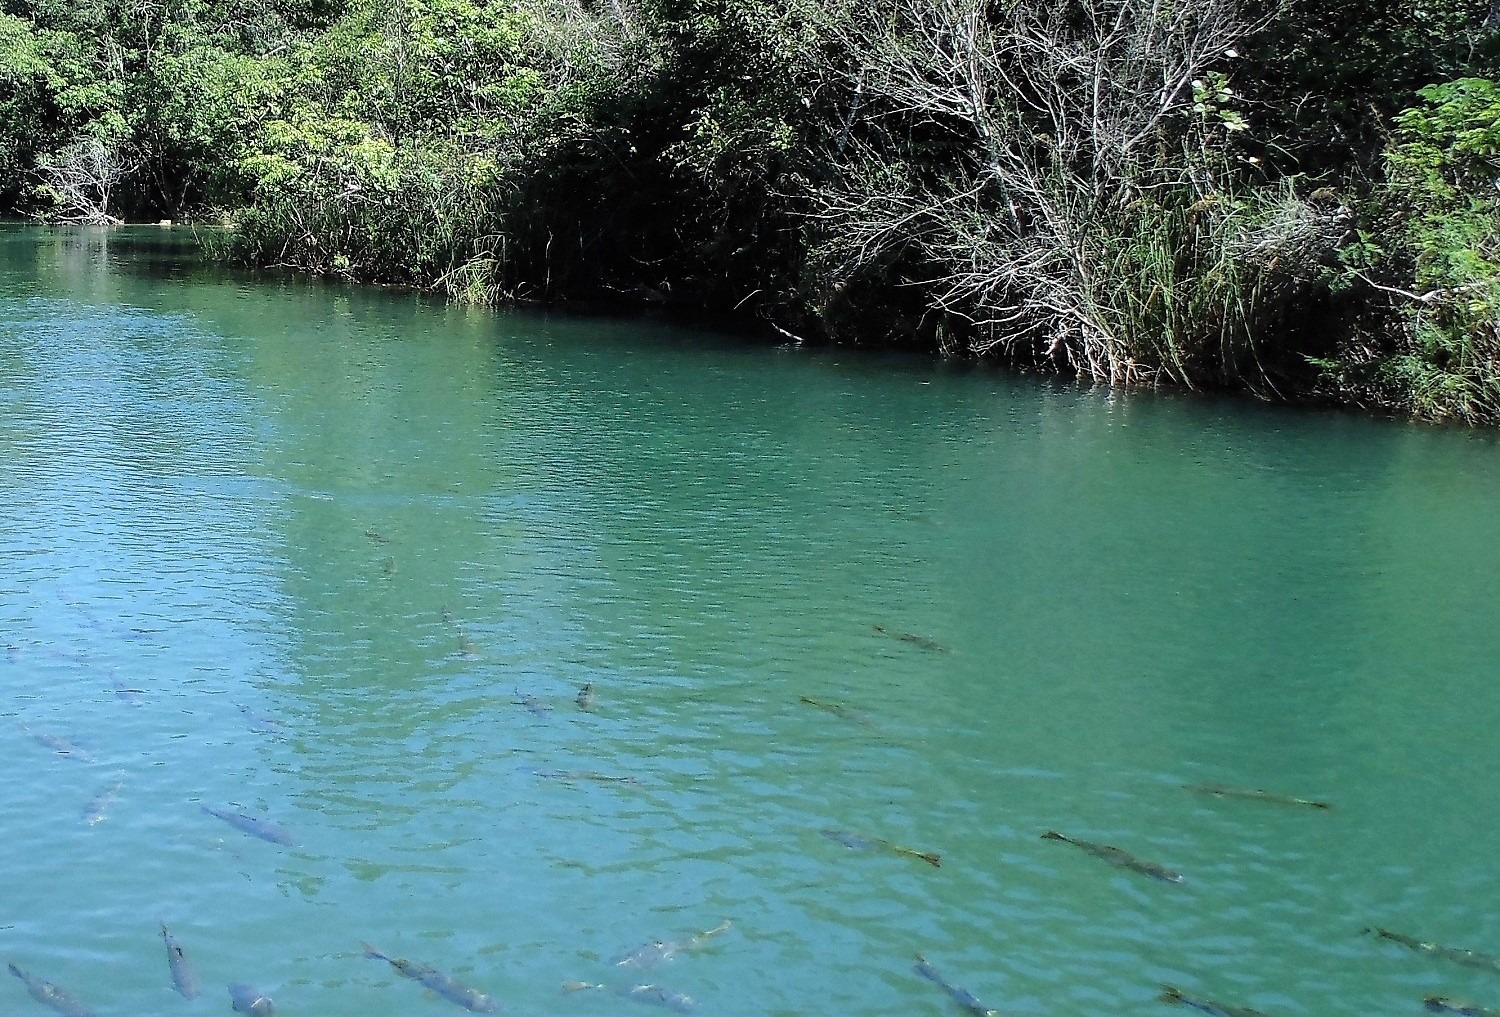 Utilização ilegal das águas do Rio Formoso está sendo investigada em inquérito civil aberto pelo promotor Alexandre Estuqui Junior. Foto: Boni